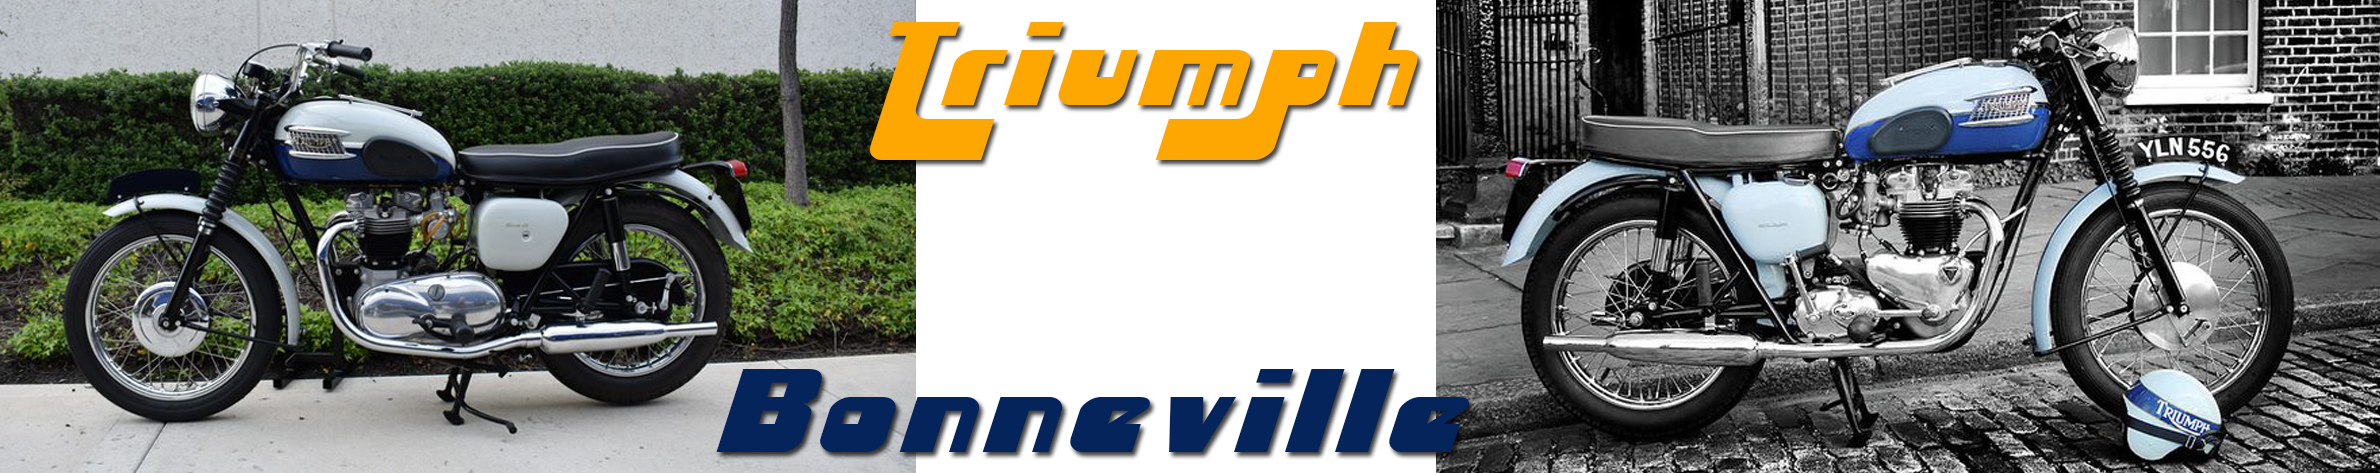 triumph-bonneville